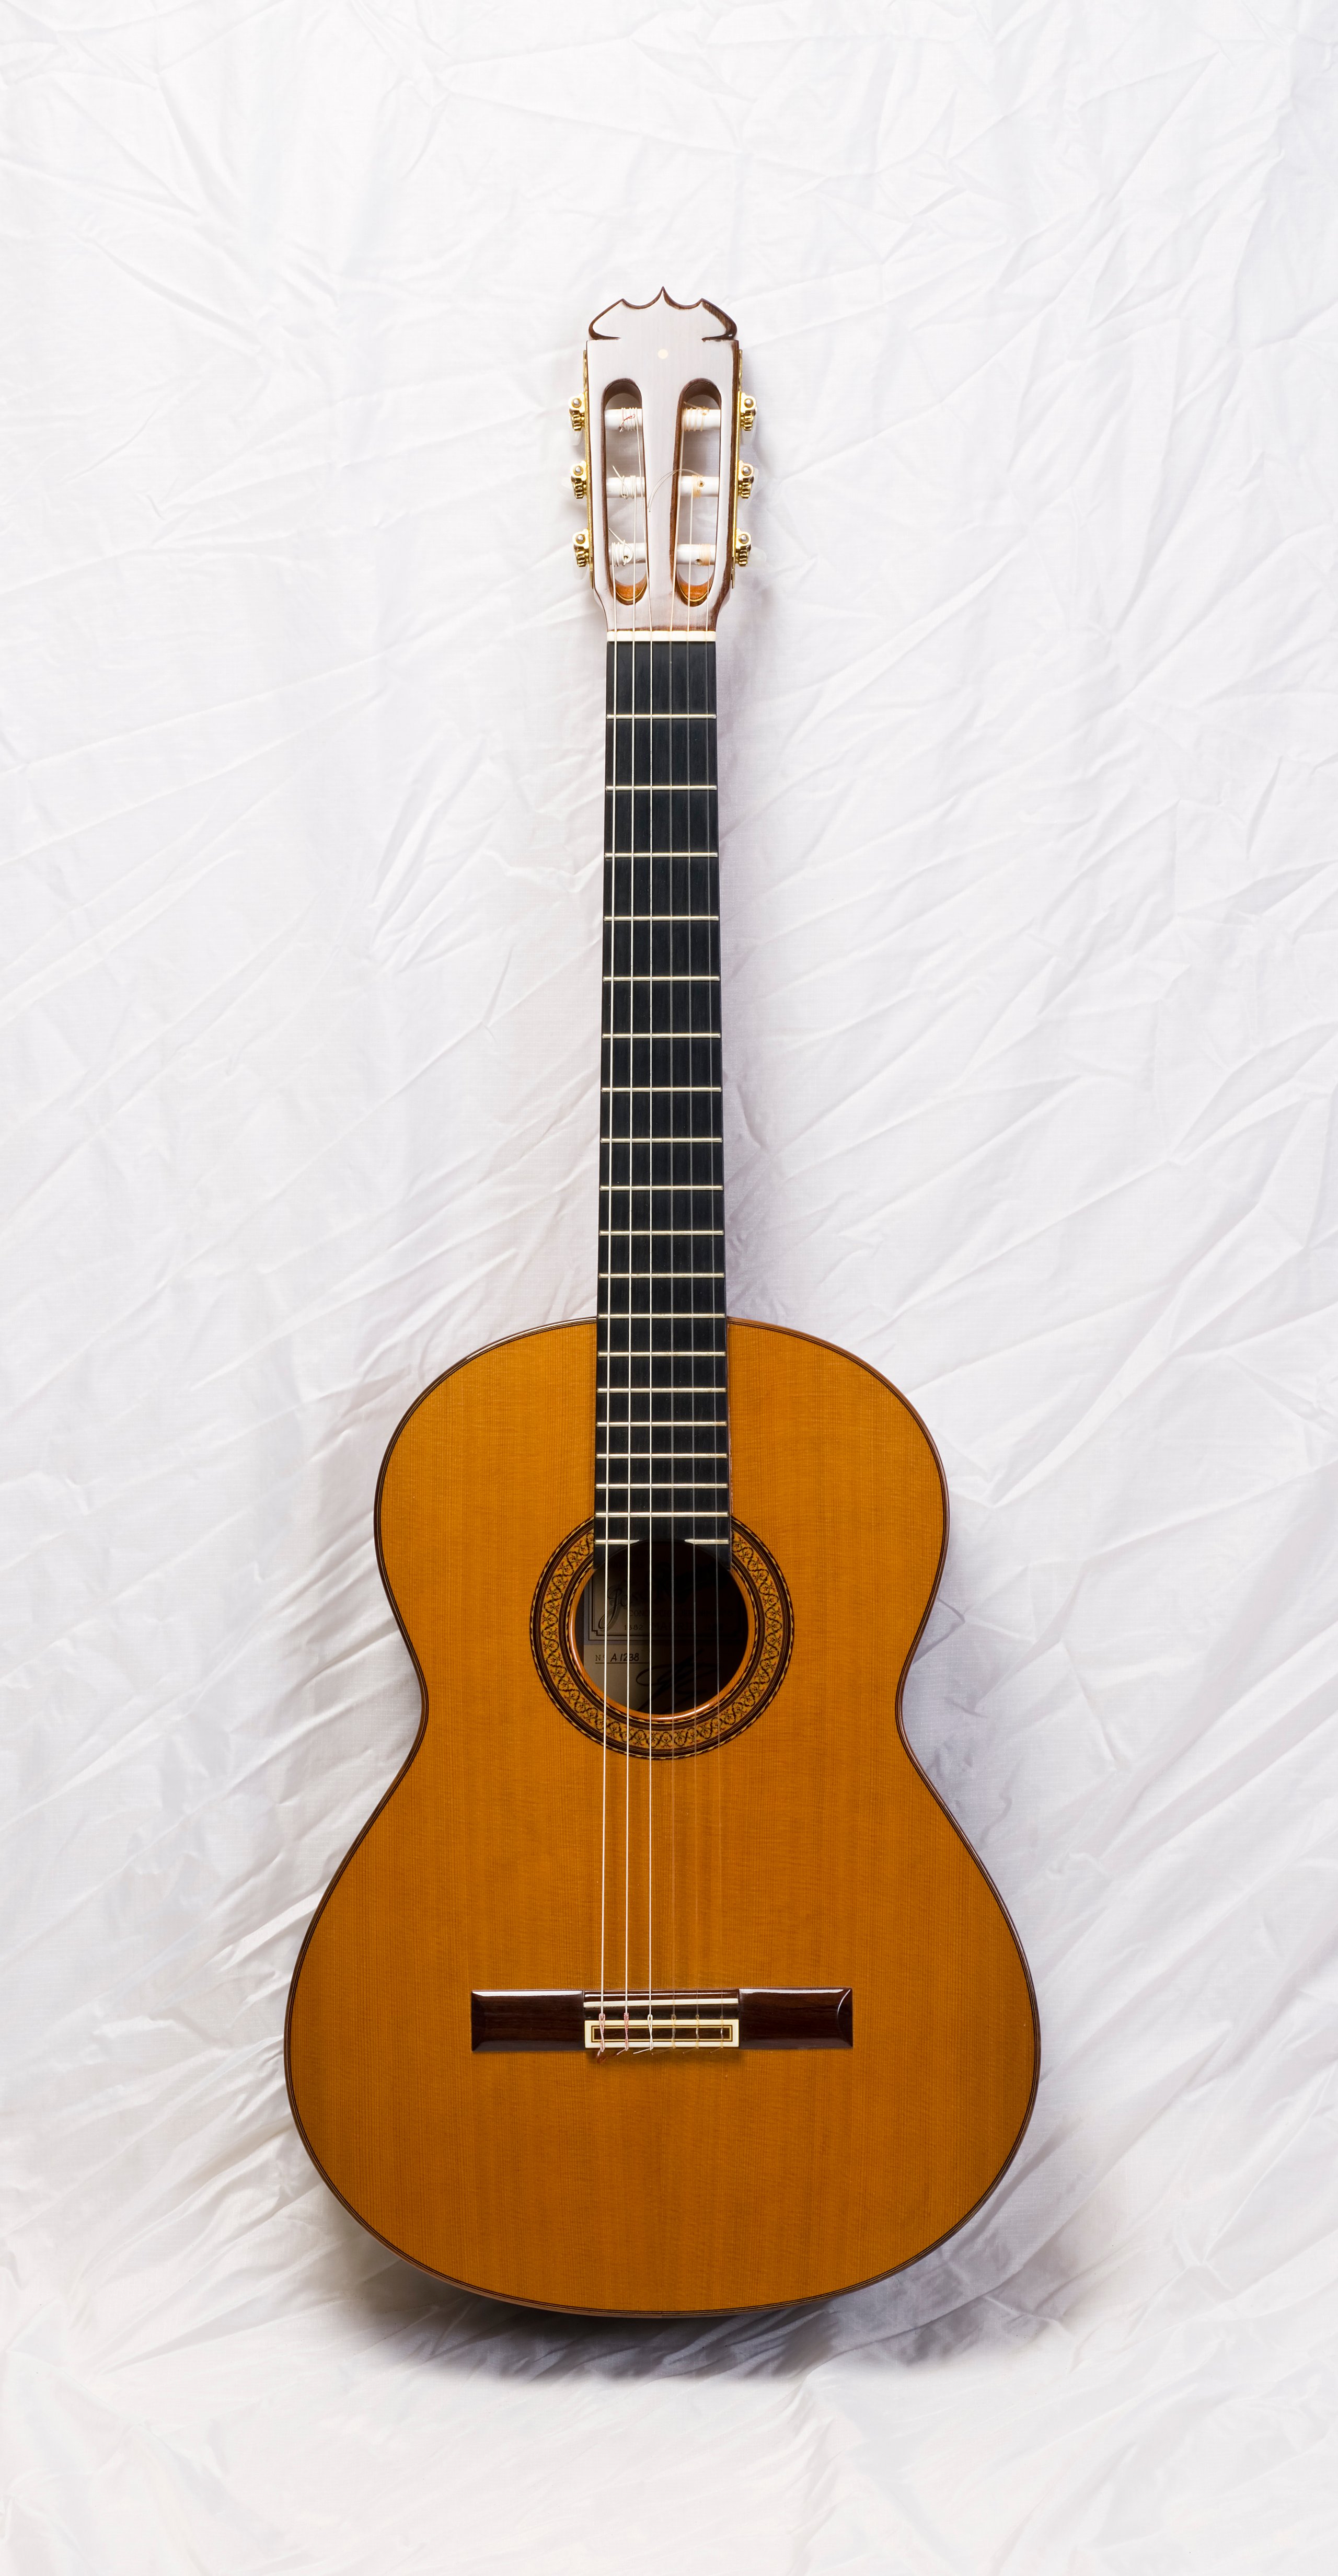 'De Camara' classical guitar made by Jose Ramirez